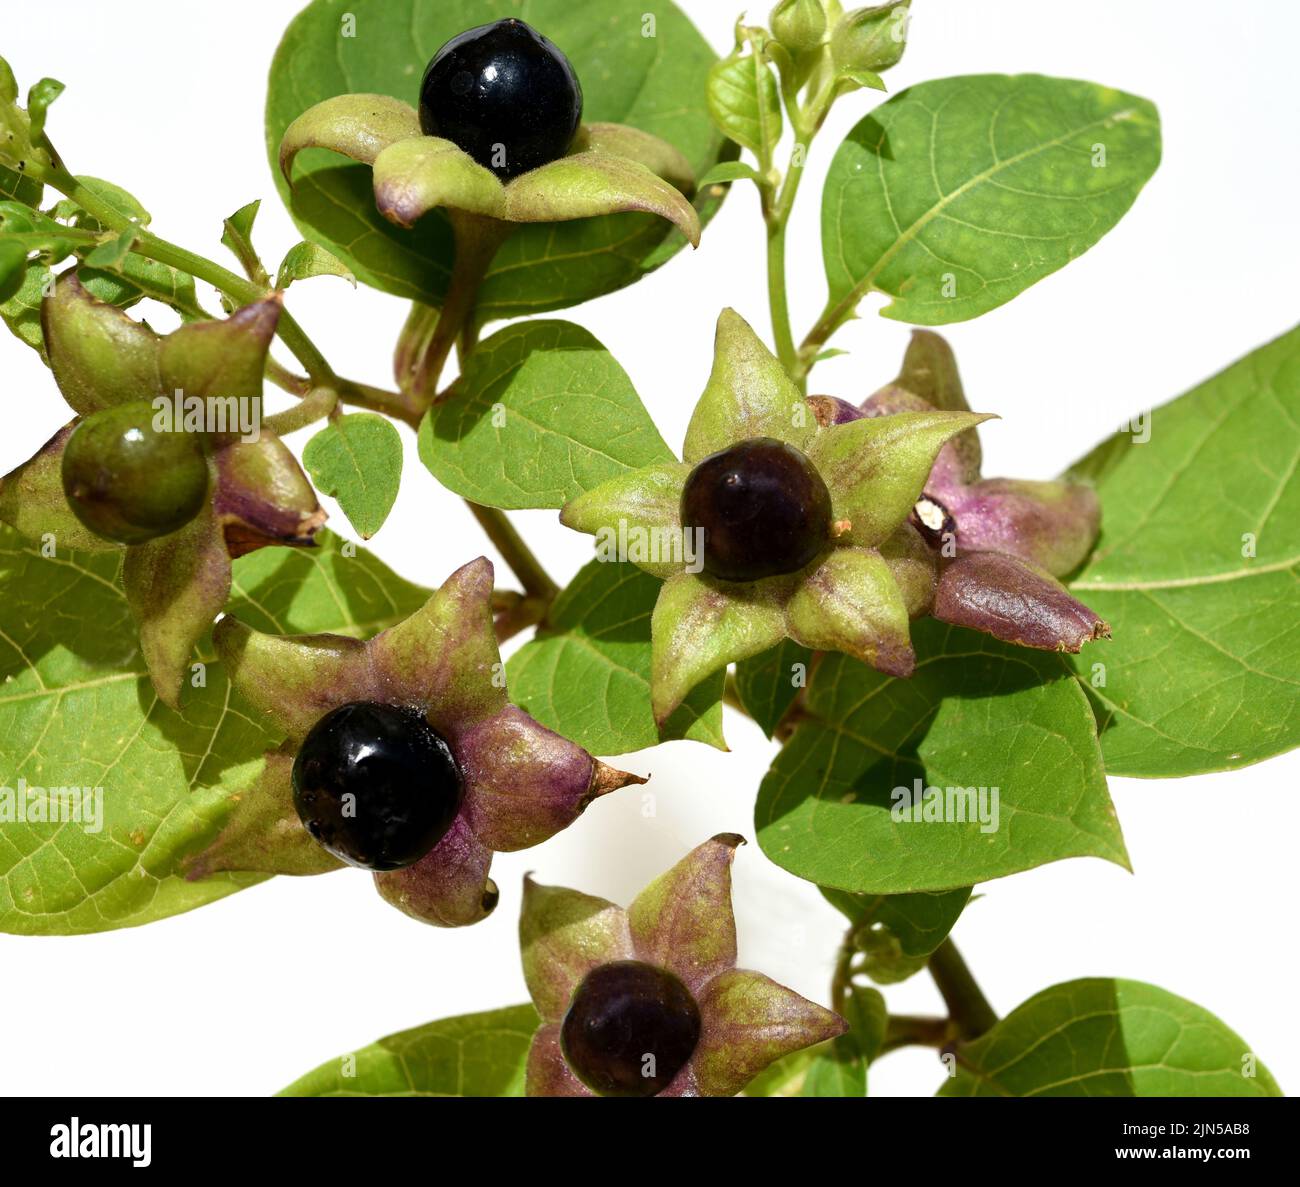 Tollkirsche, Atropa Bella-donna, hat schwarze Beeren und ist eine Gift-und Heilpflanze. Deadly Nightshade, Atropa bella-donna, has black berries and i Stock Photo